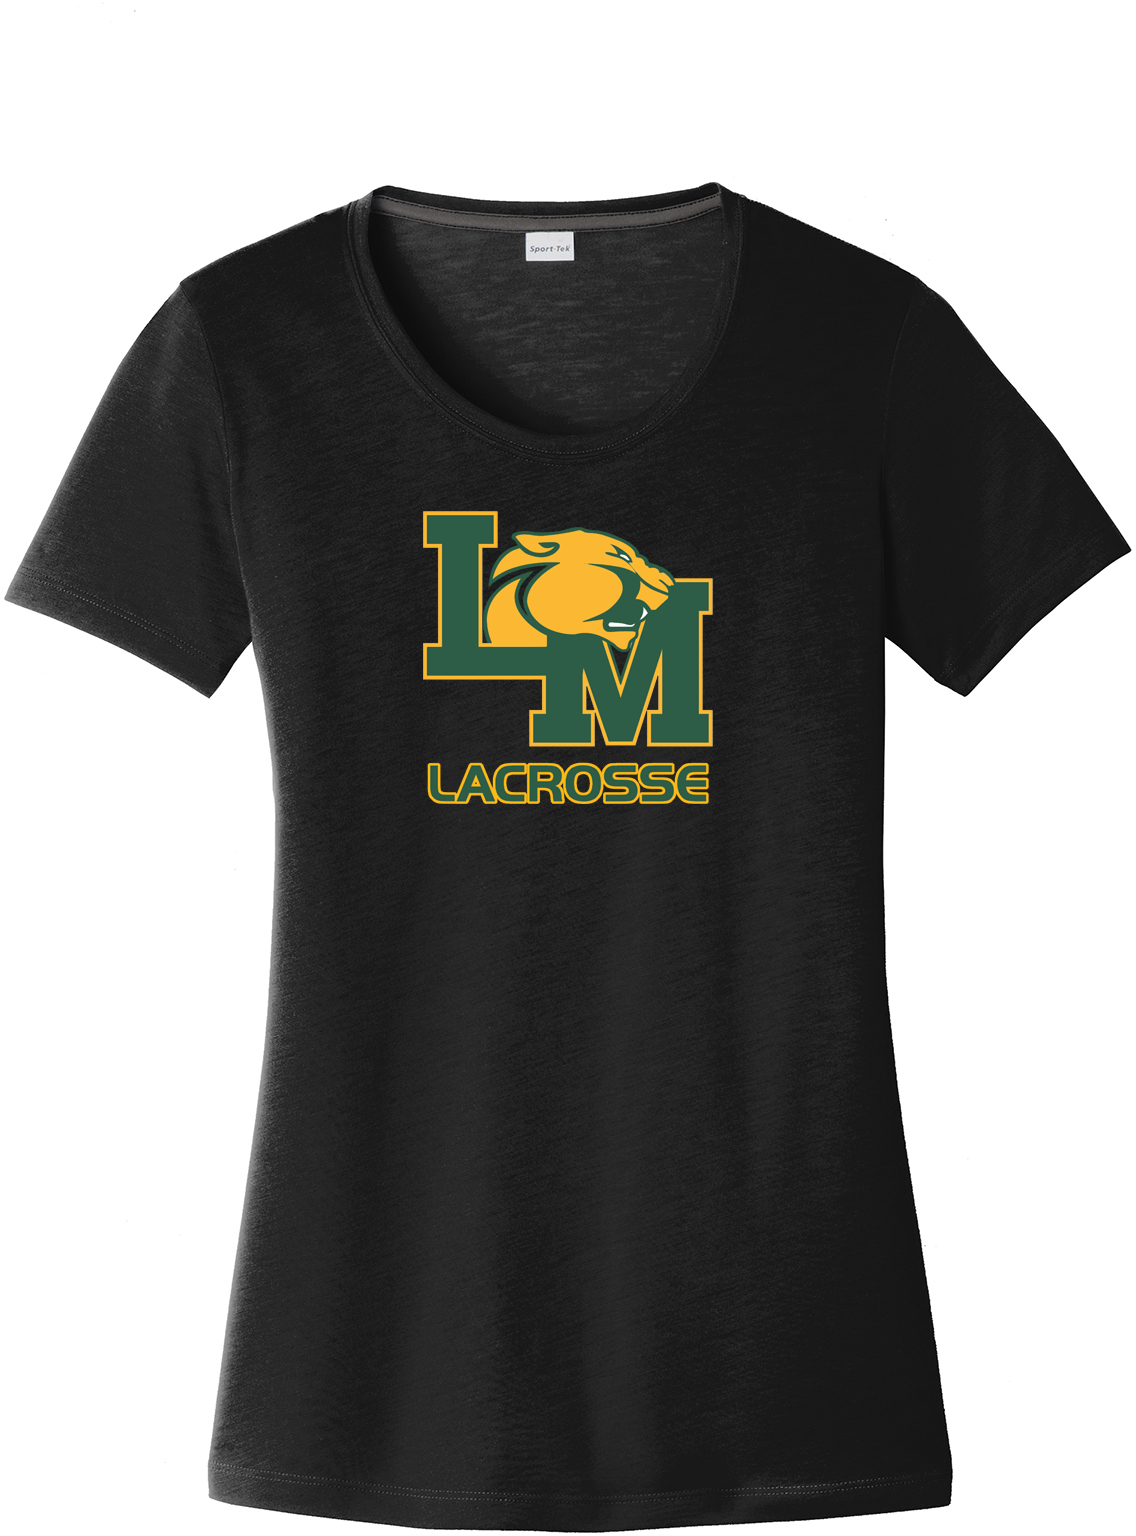 Little Miami Lacrosse Women's Black CottonTouch Performance T-Shirt